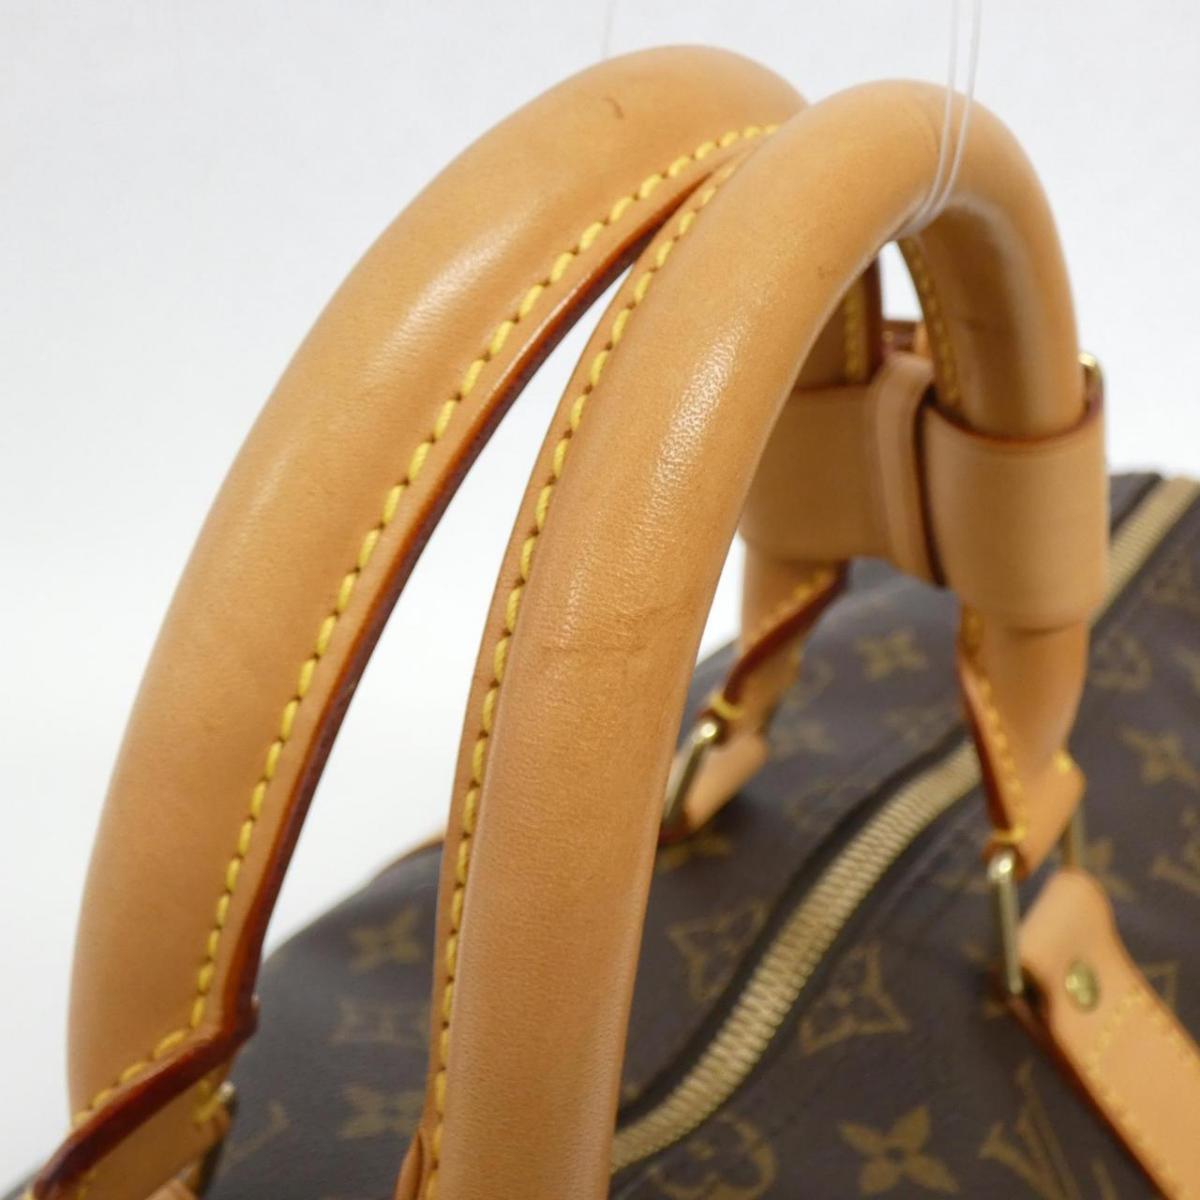 Louis Vuitton 50cm M41426 Boston Bag